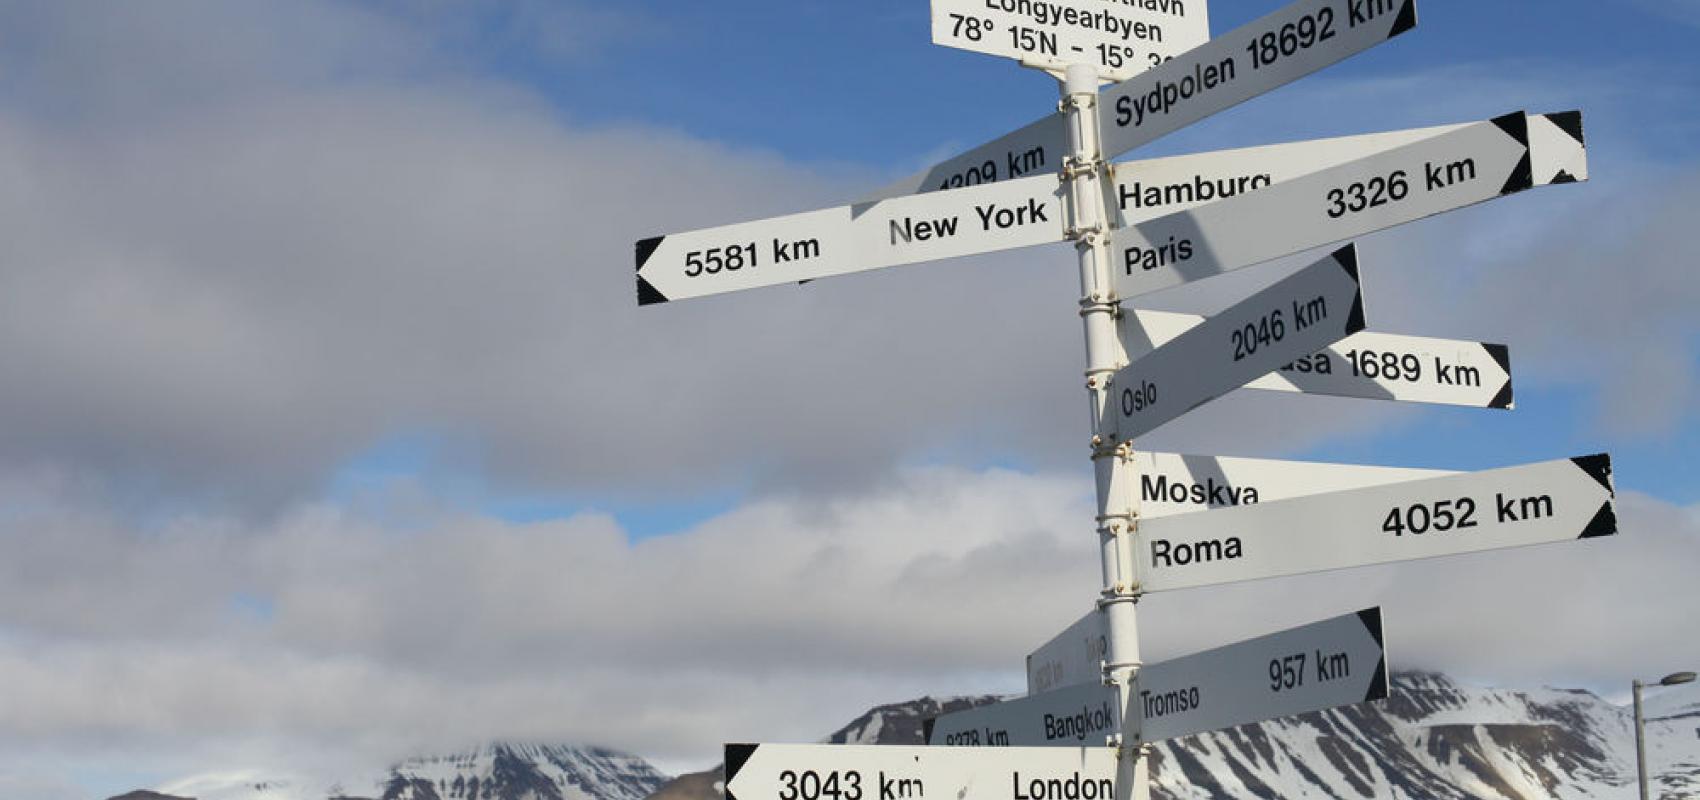 Panneau de distances à diverses villes depuis l'Arctique (archipel Svalbard) -  - © A. Taithe